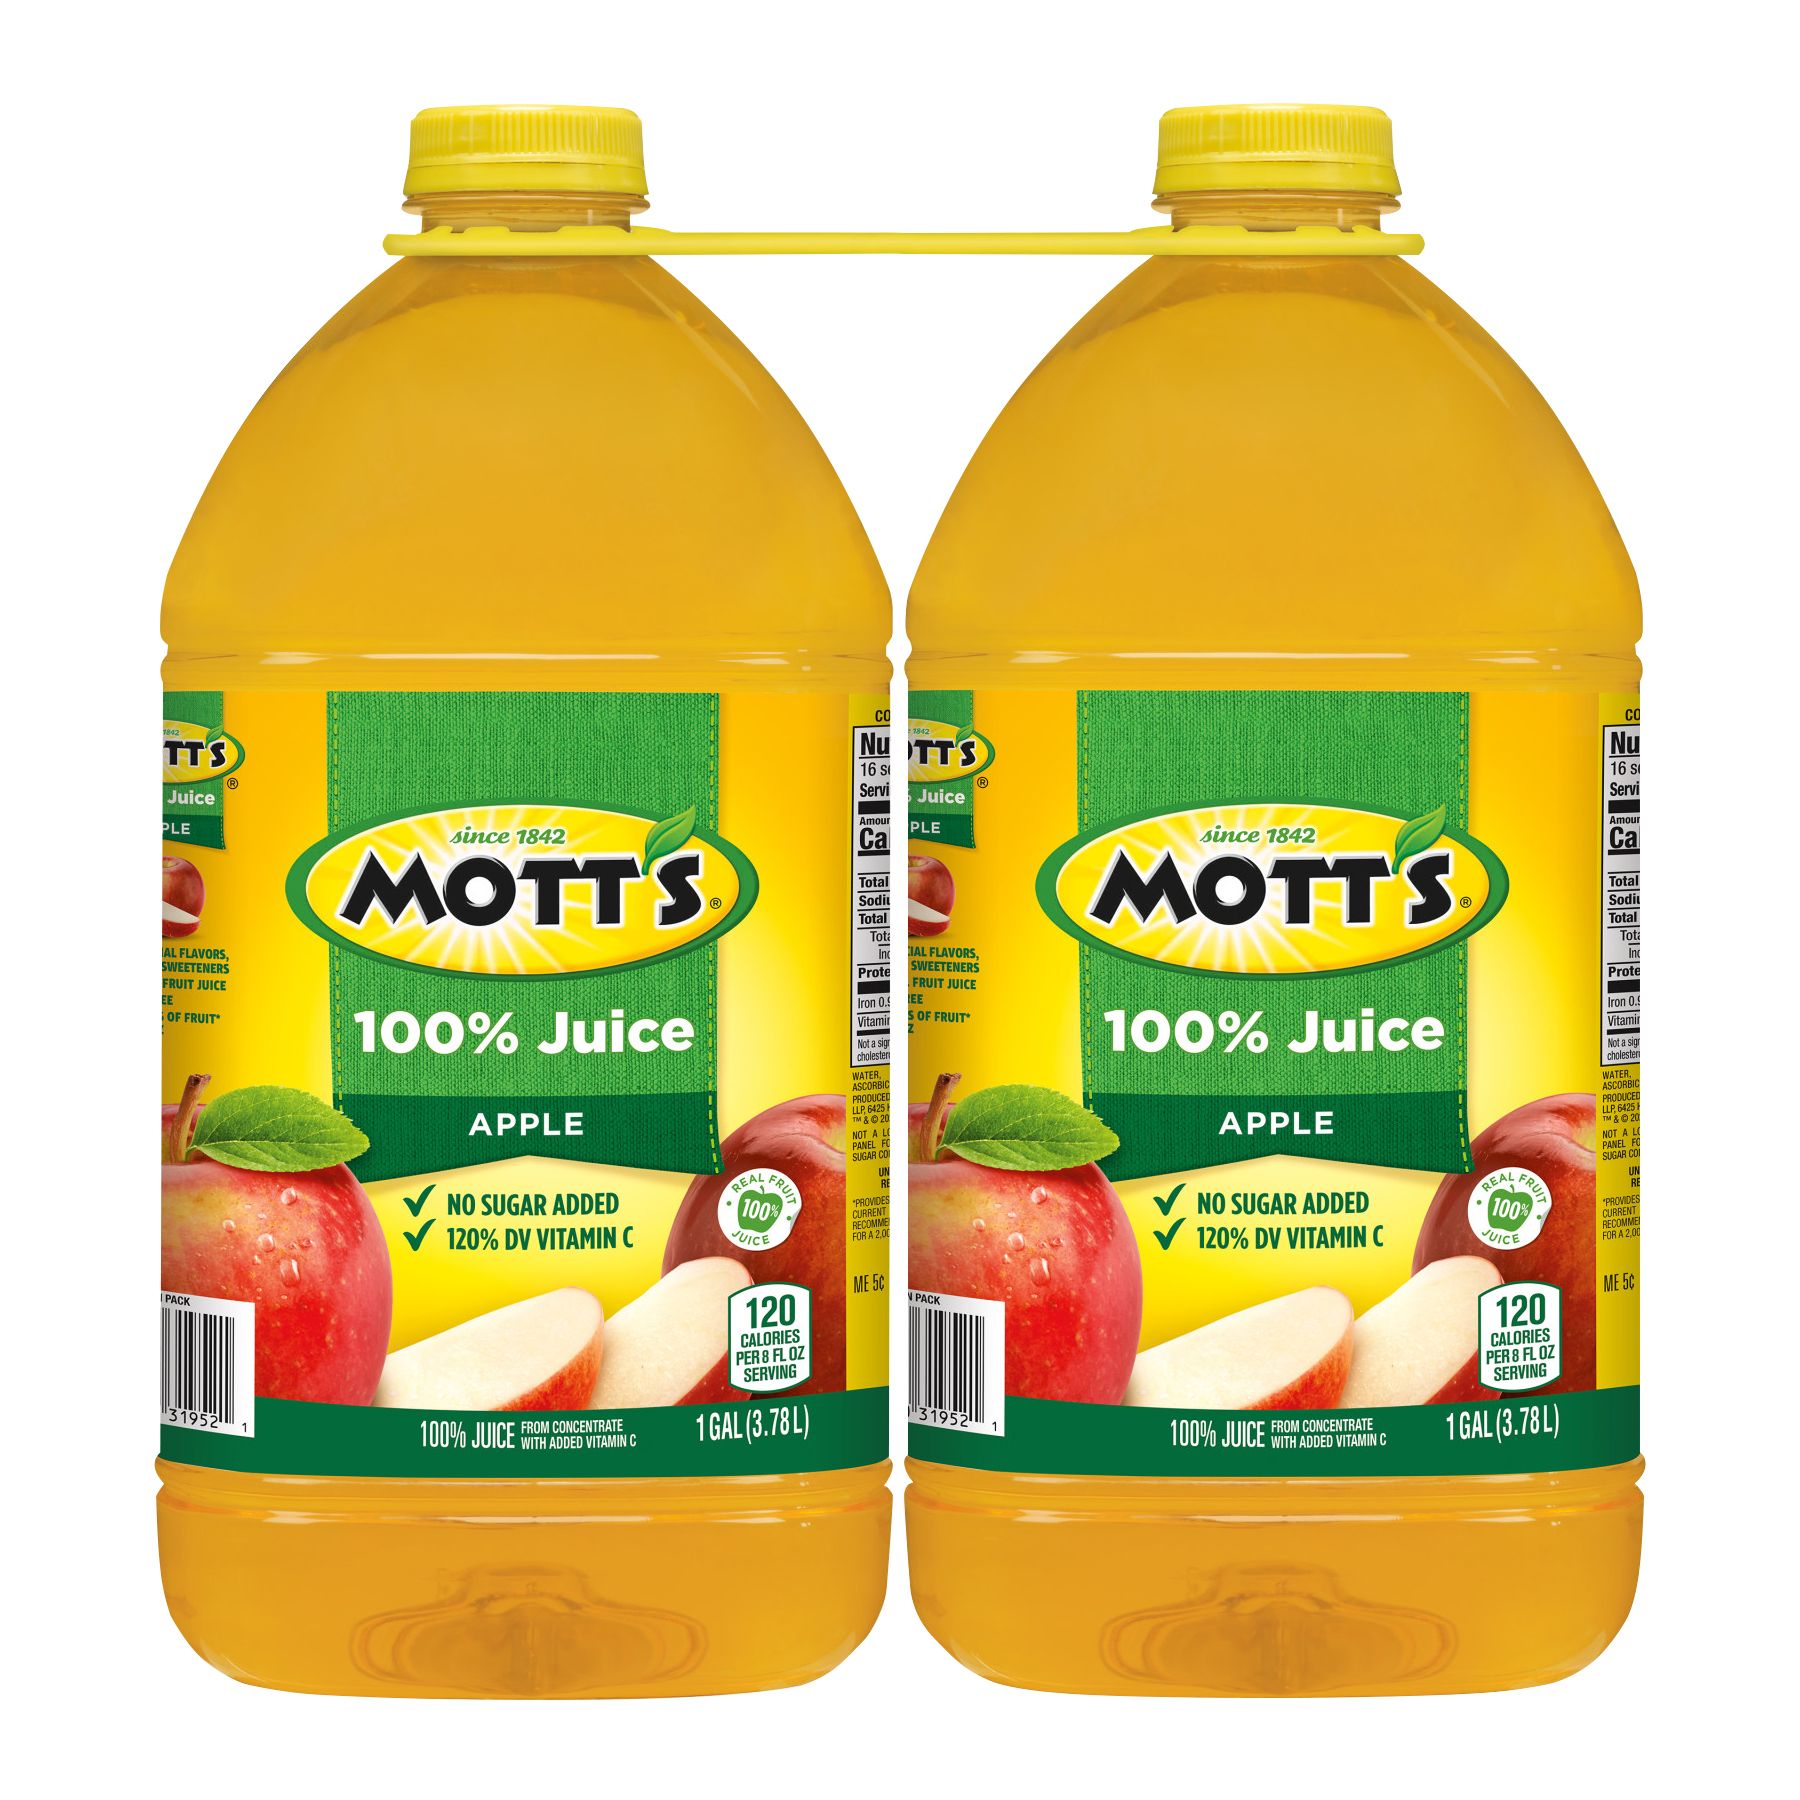 UNITED DAIRY 100% Pure Orange Juice 1 GAL PLASTIC JUG